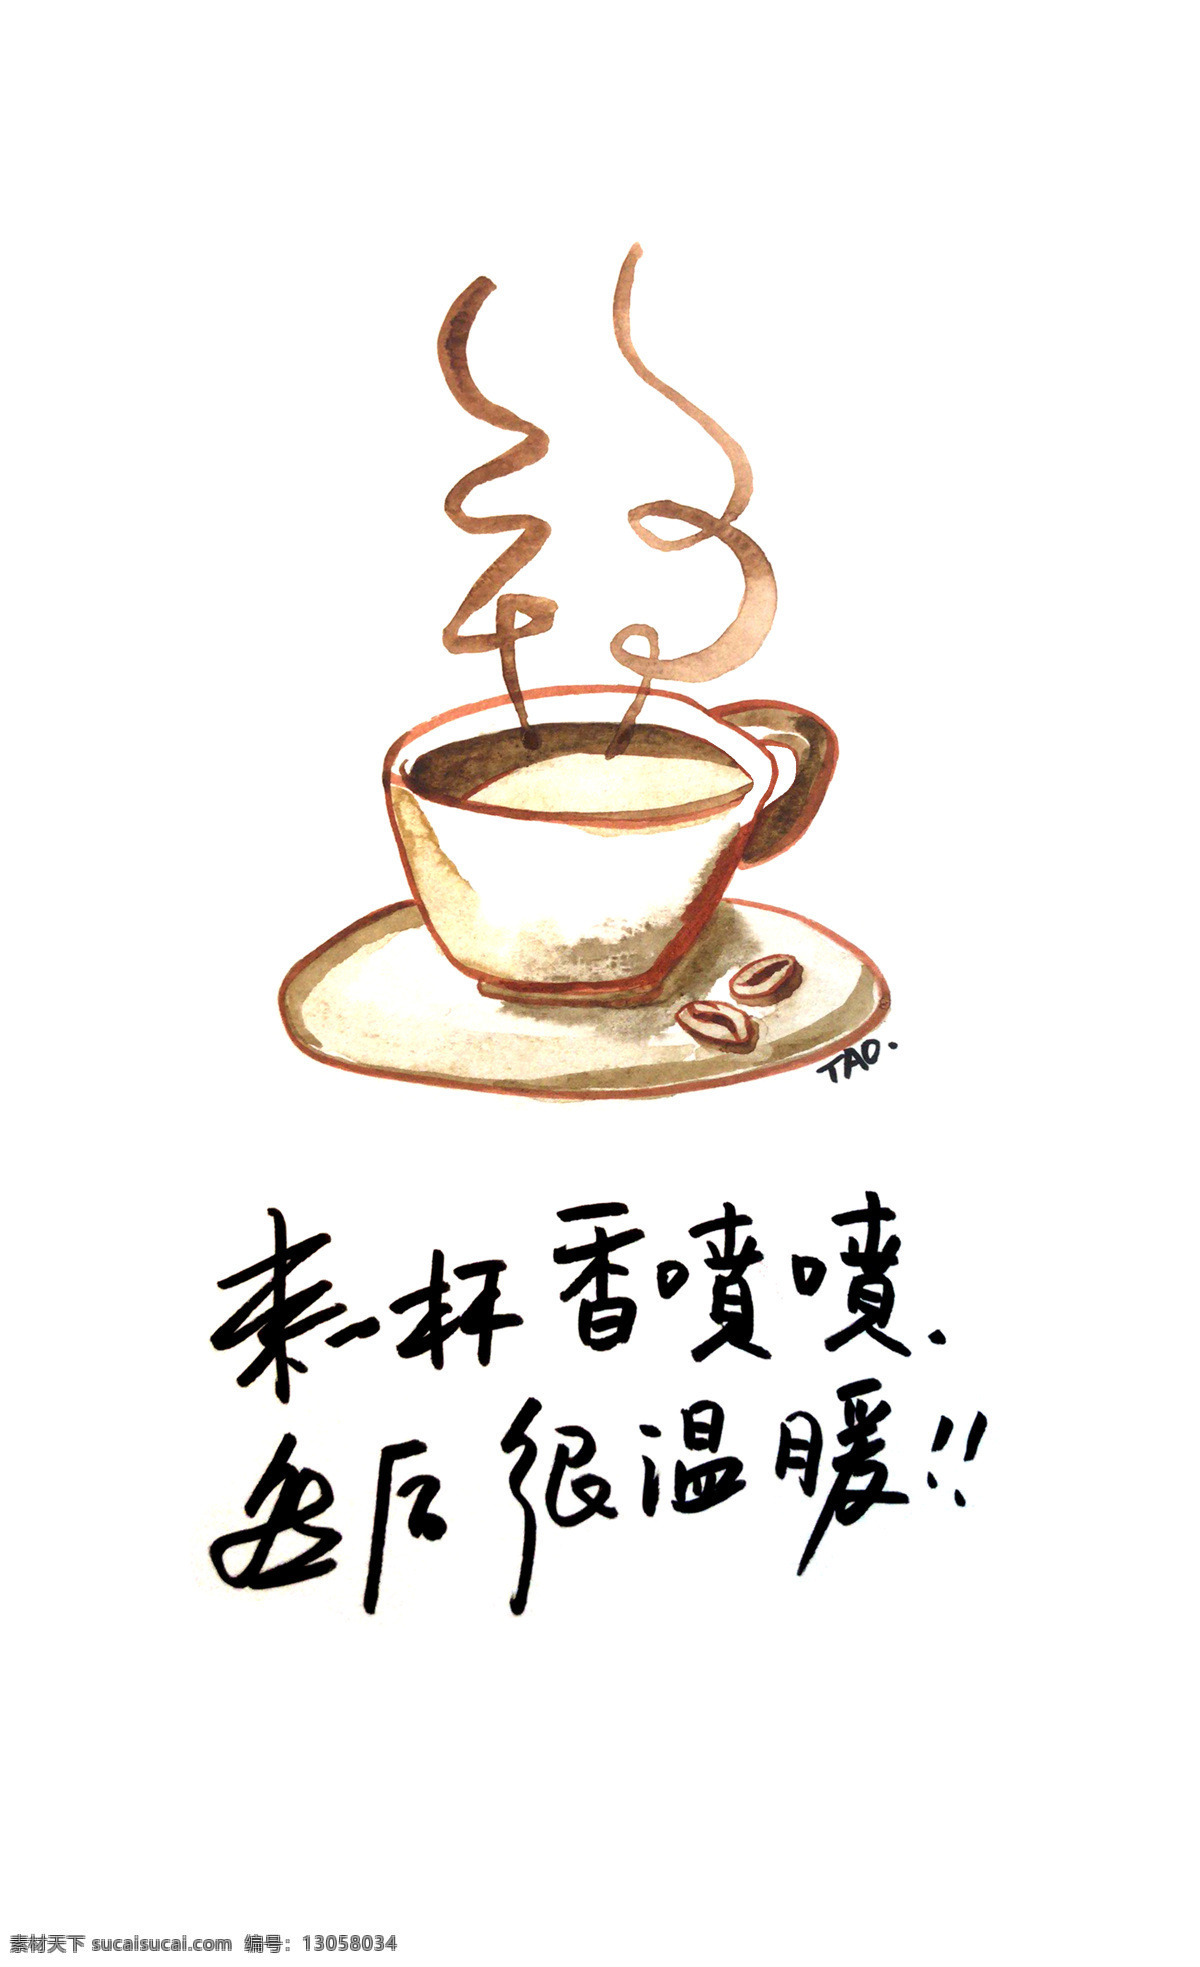 不福不行 福 咖啡 温暖 小确幸 文化艺术 绘画书法